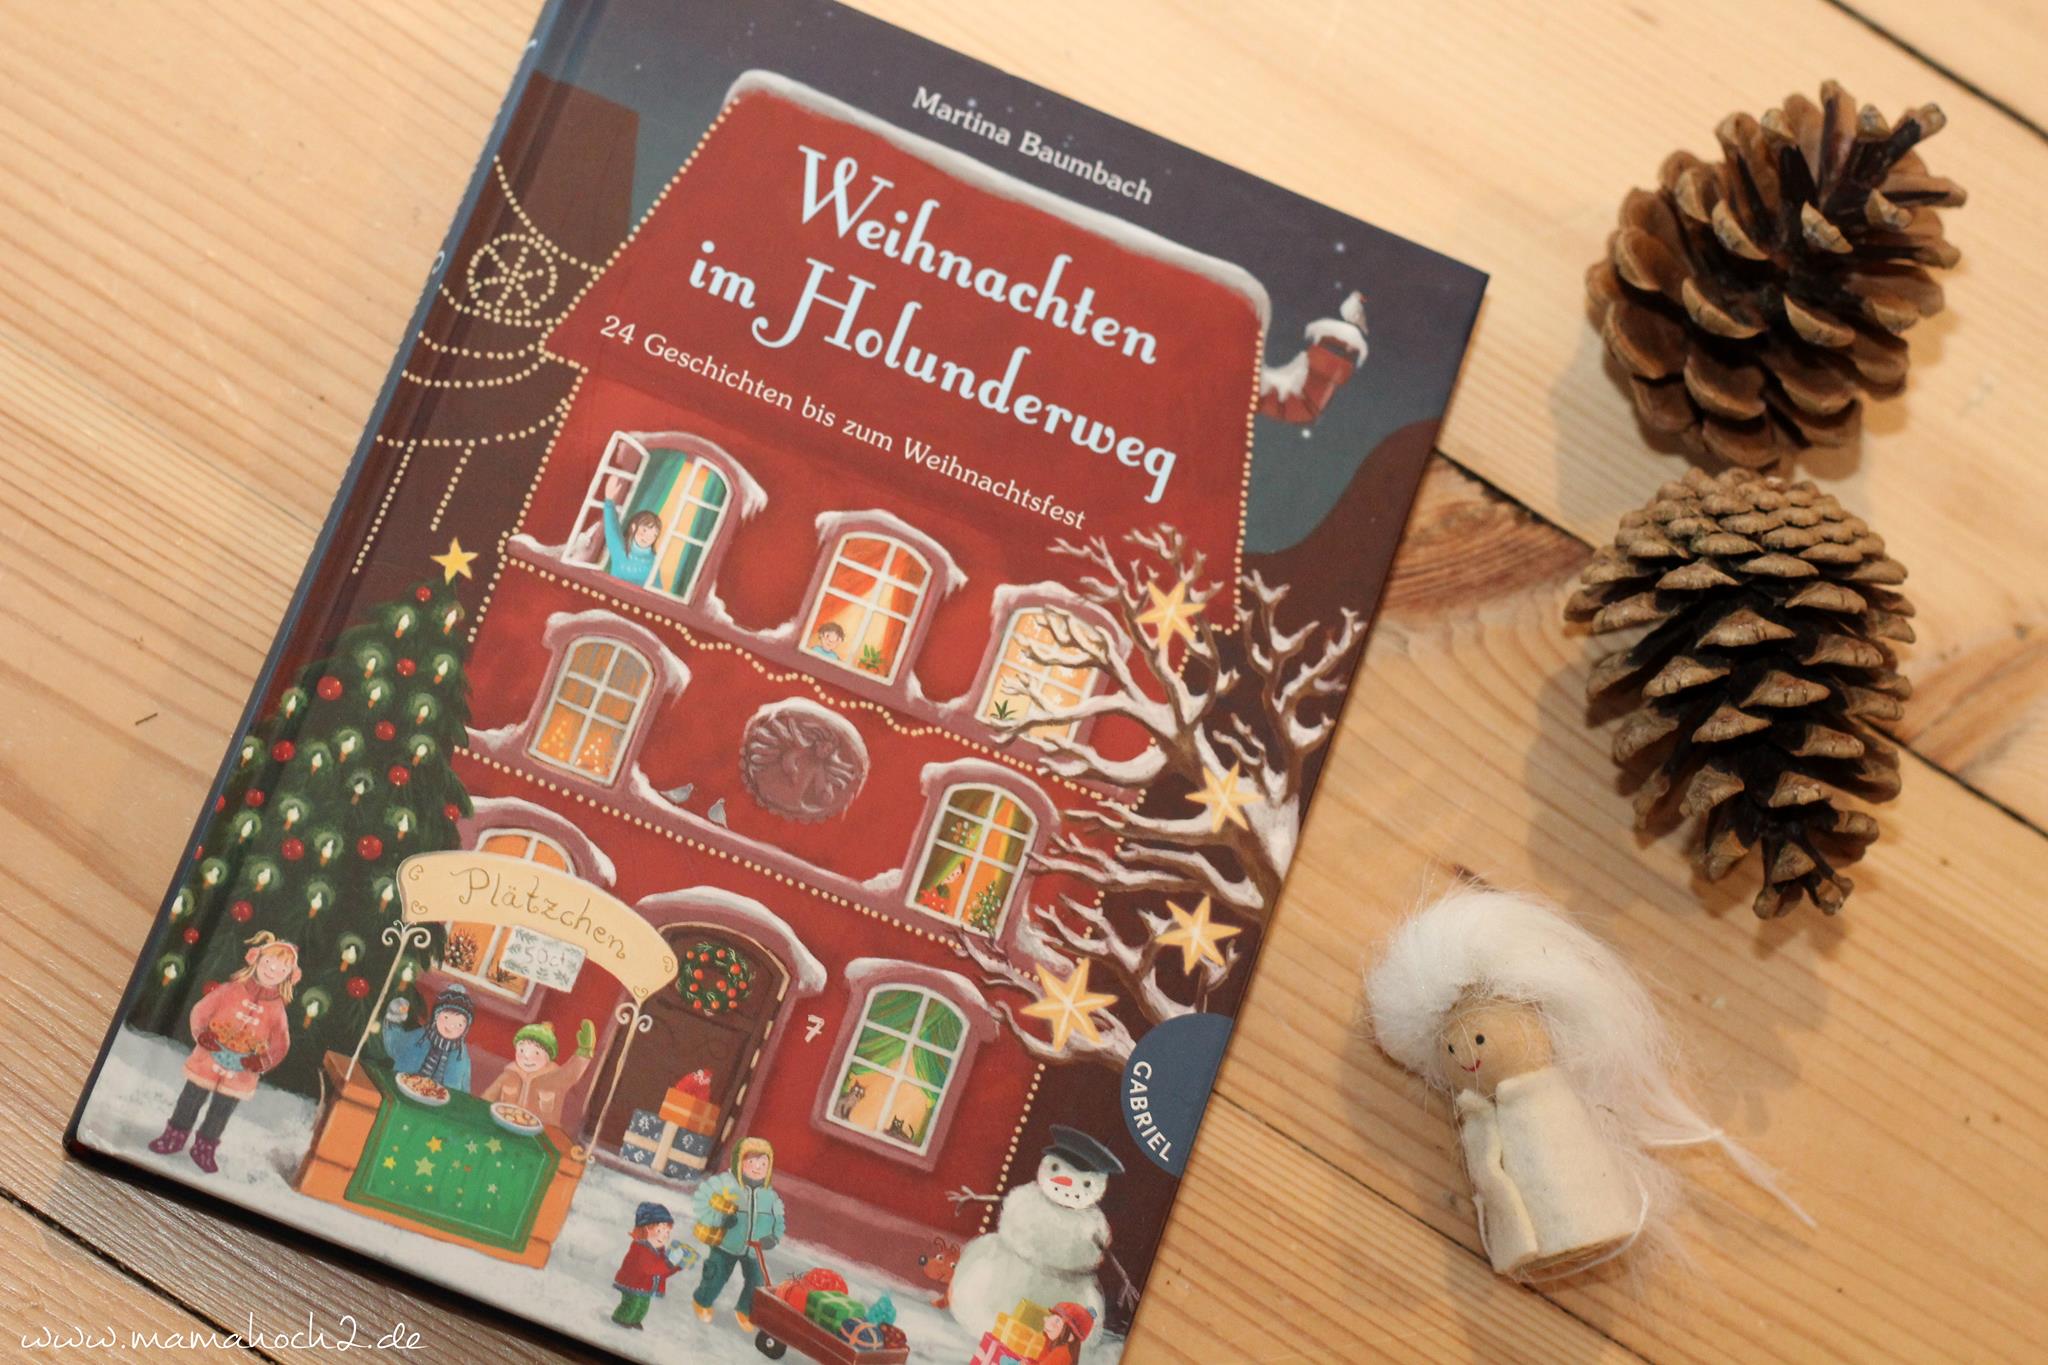 Weihnachtsbücher weihnachten bücher (4) weihnachten im holunderweg